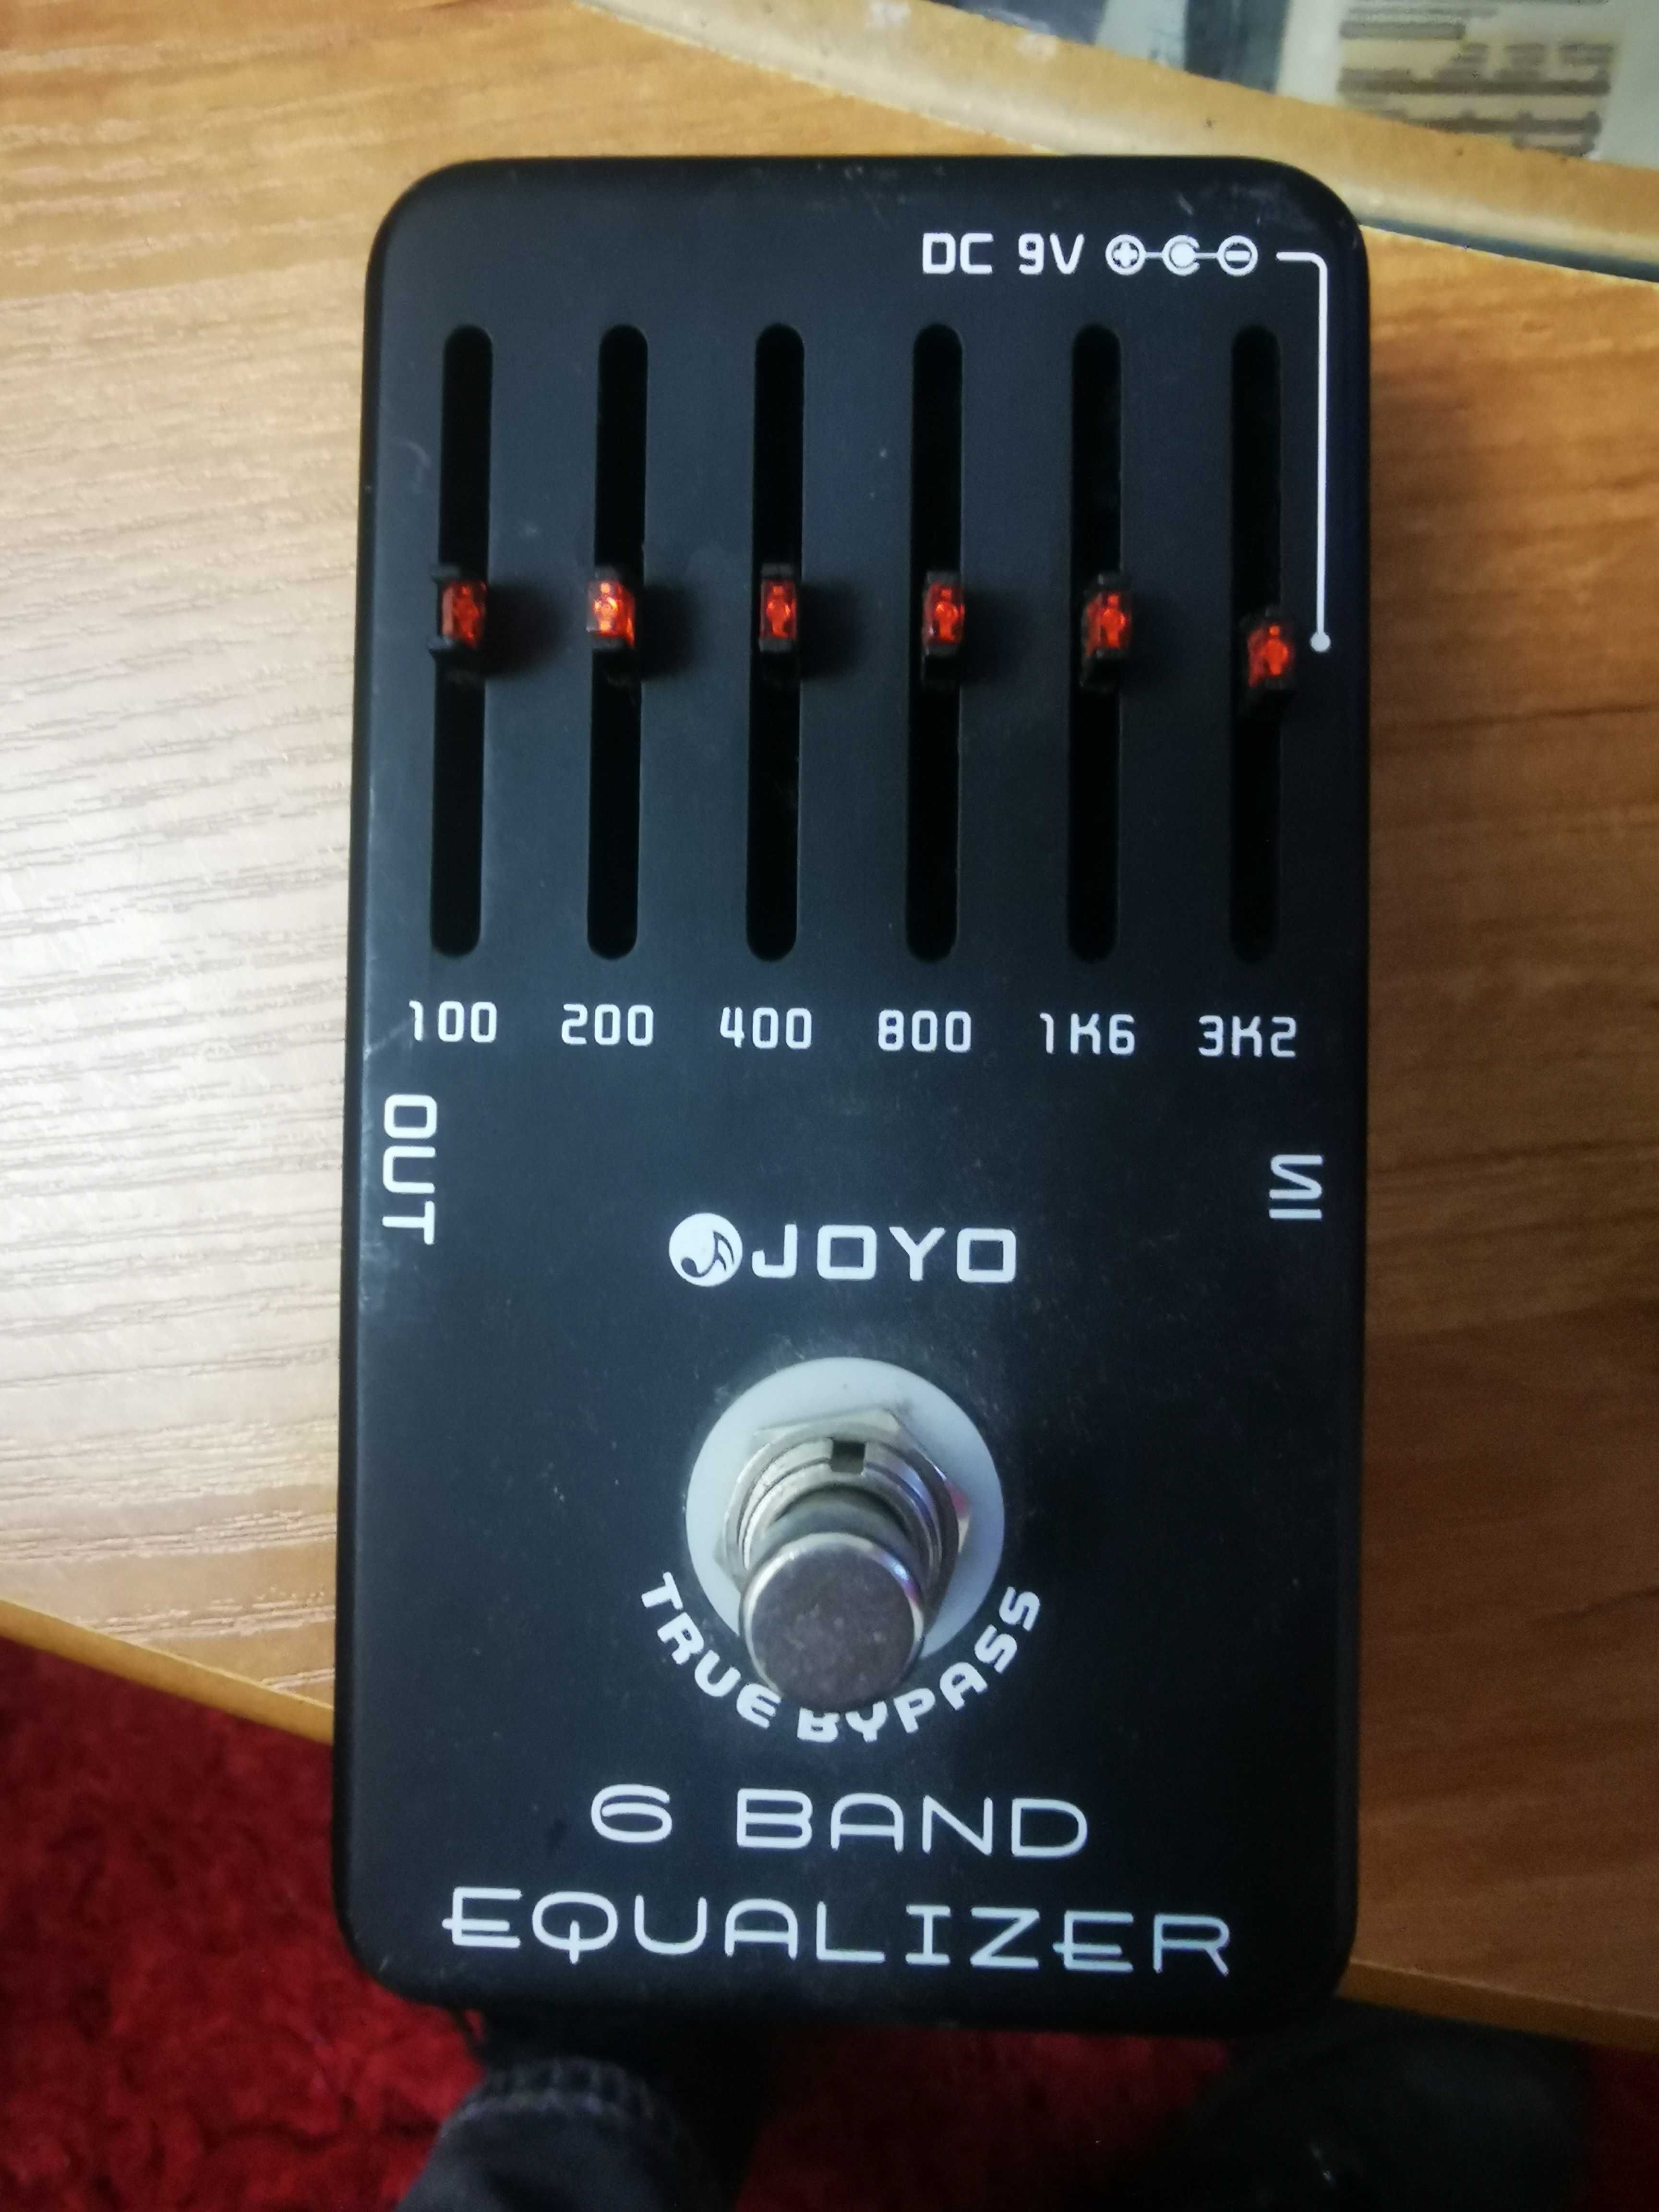 Joyo 6 band equalizer